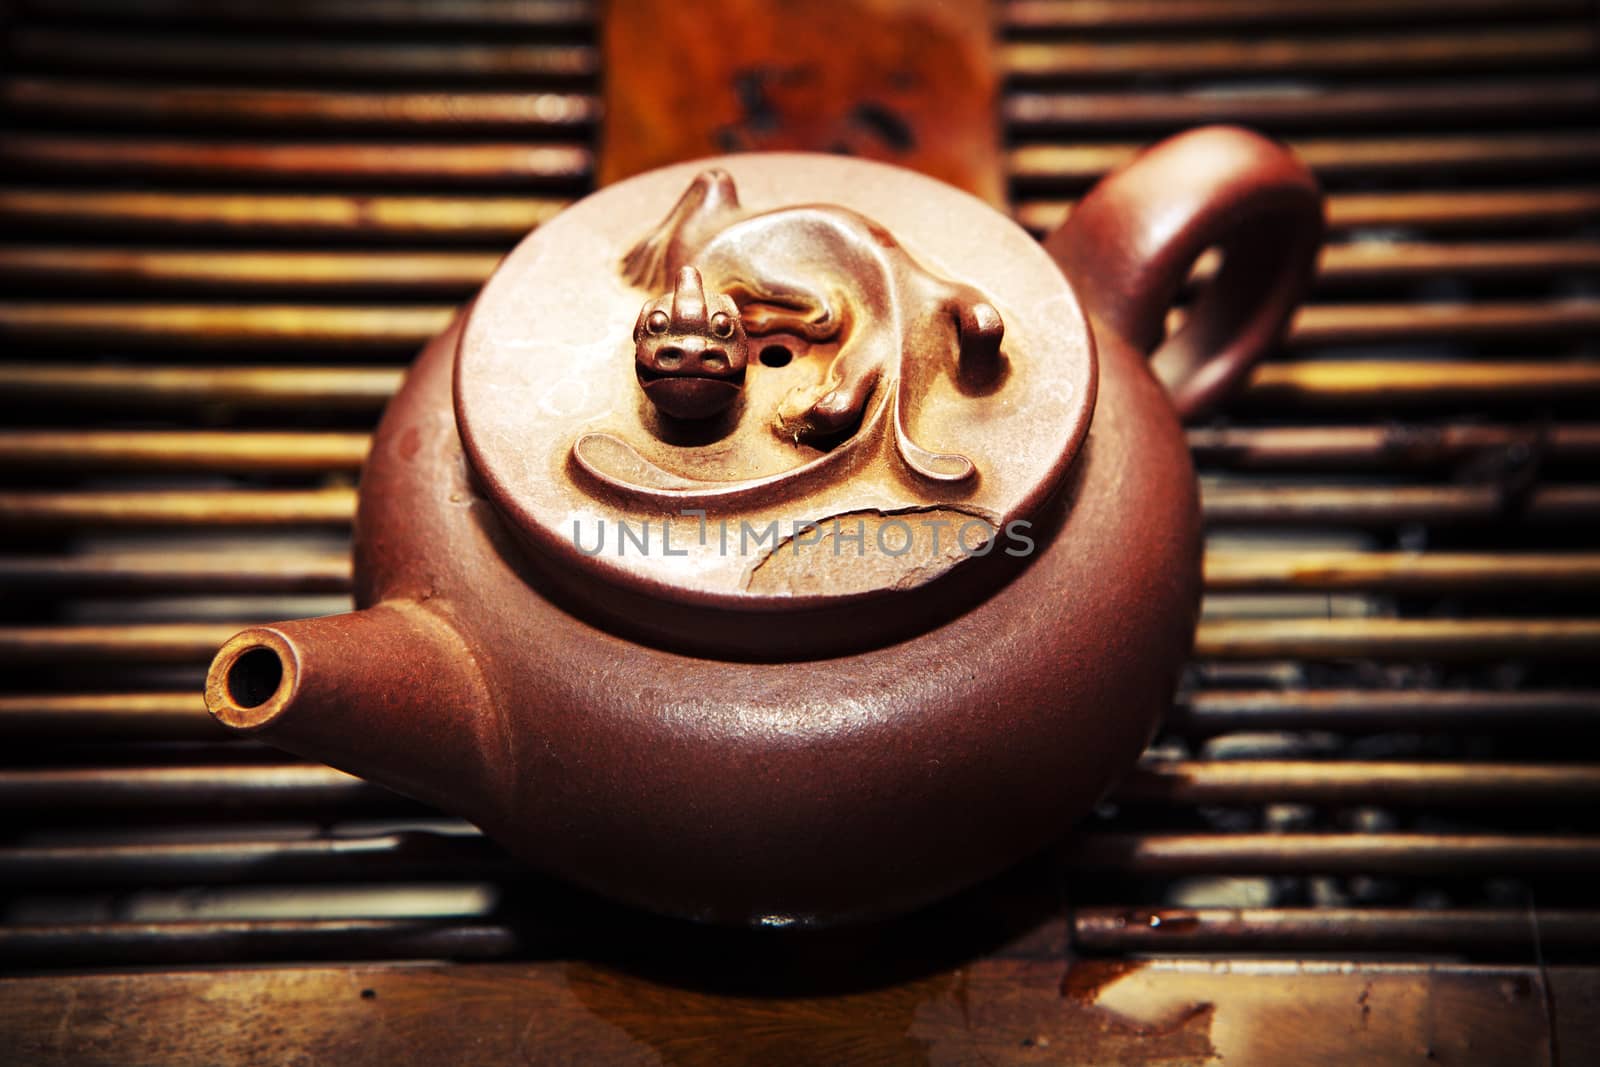 Chinese ceramic teapot studio by Jonicartoon